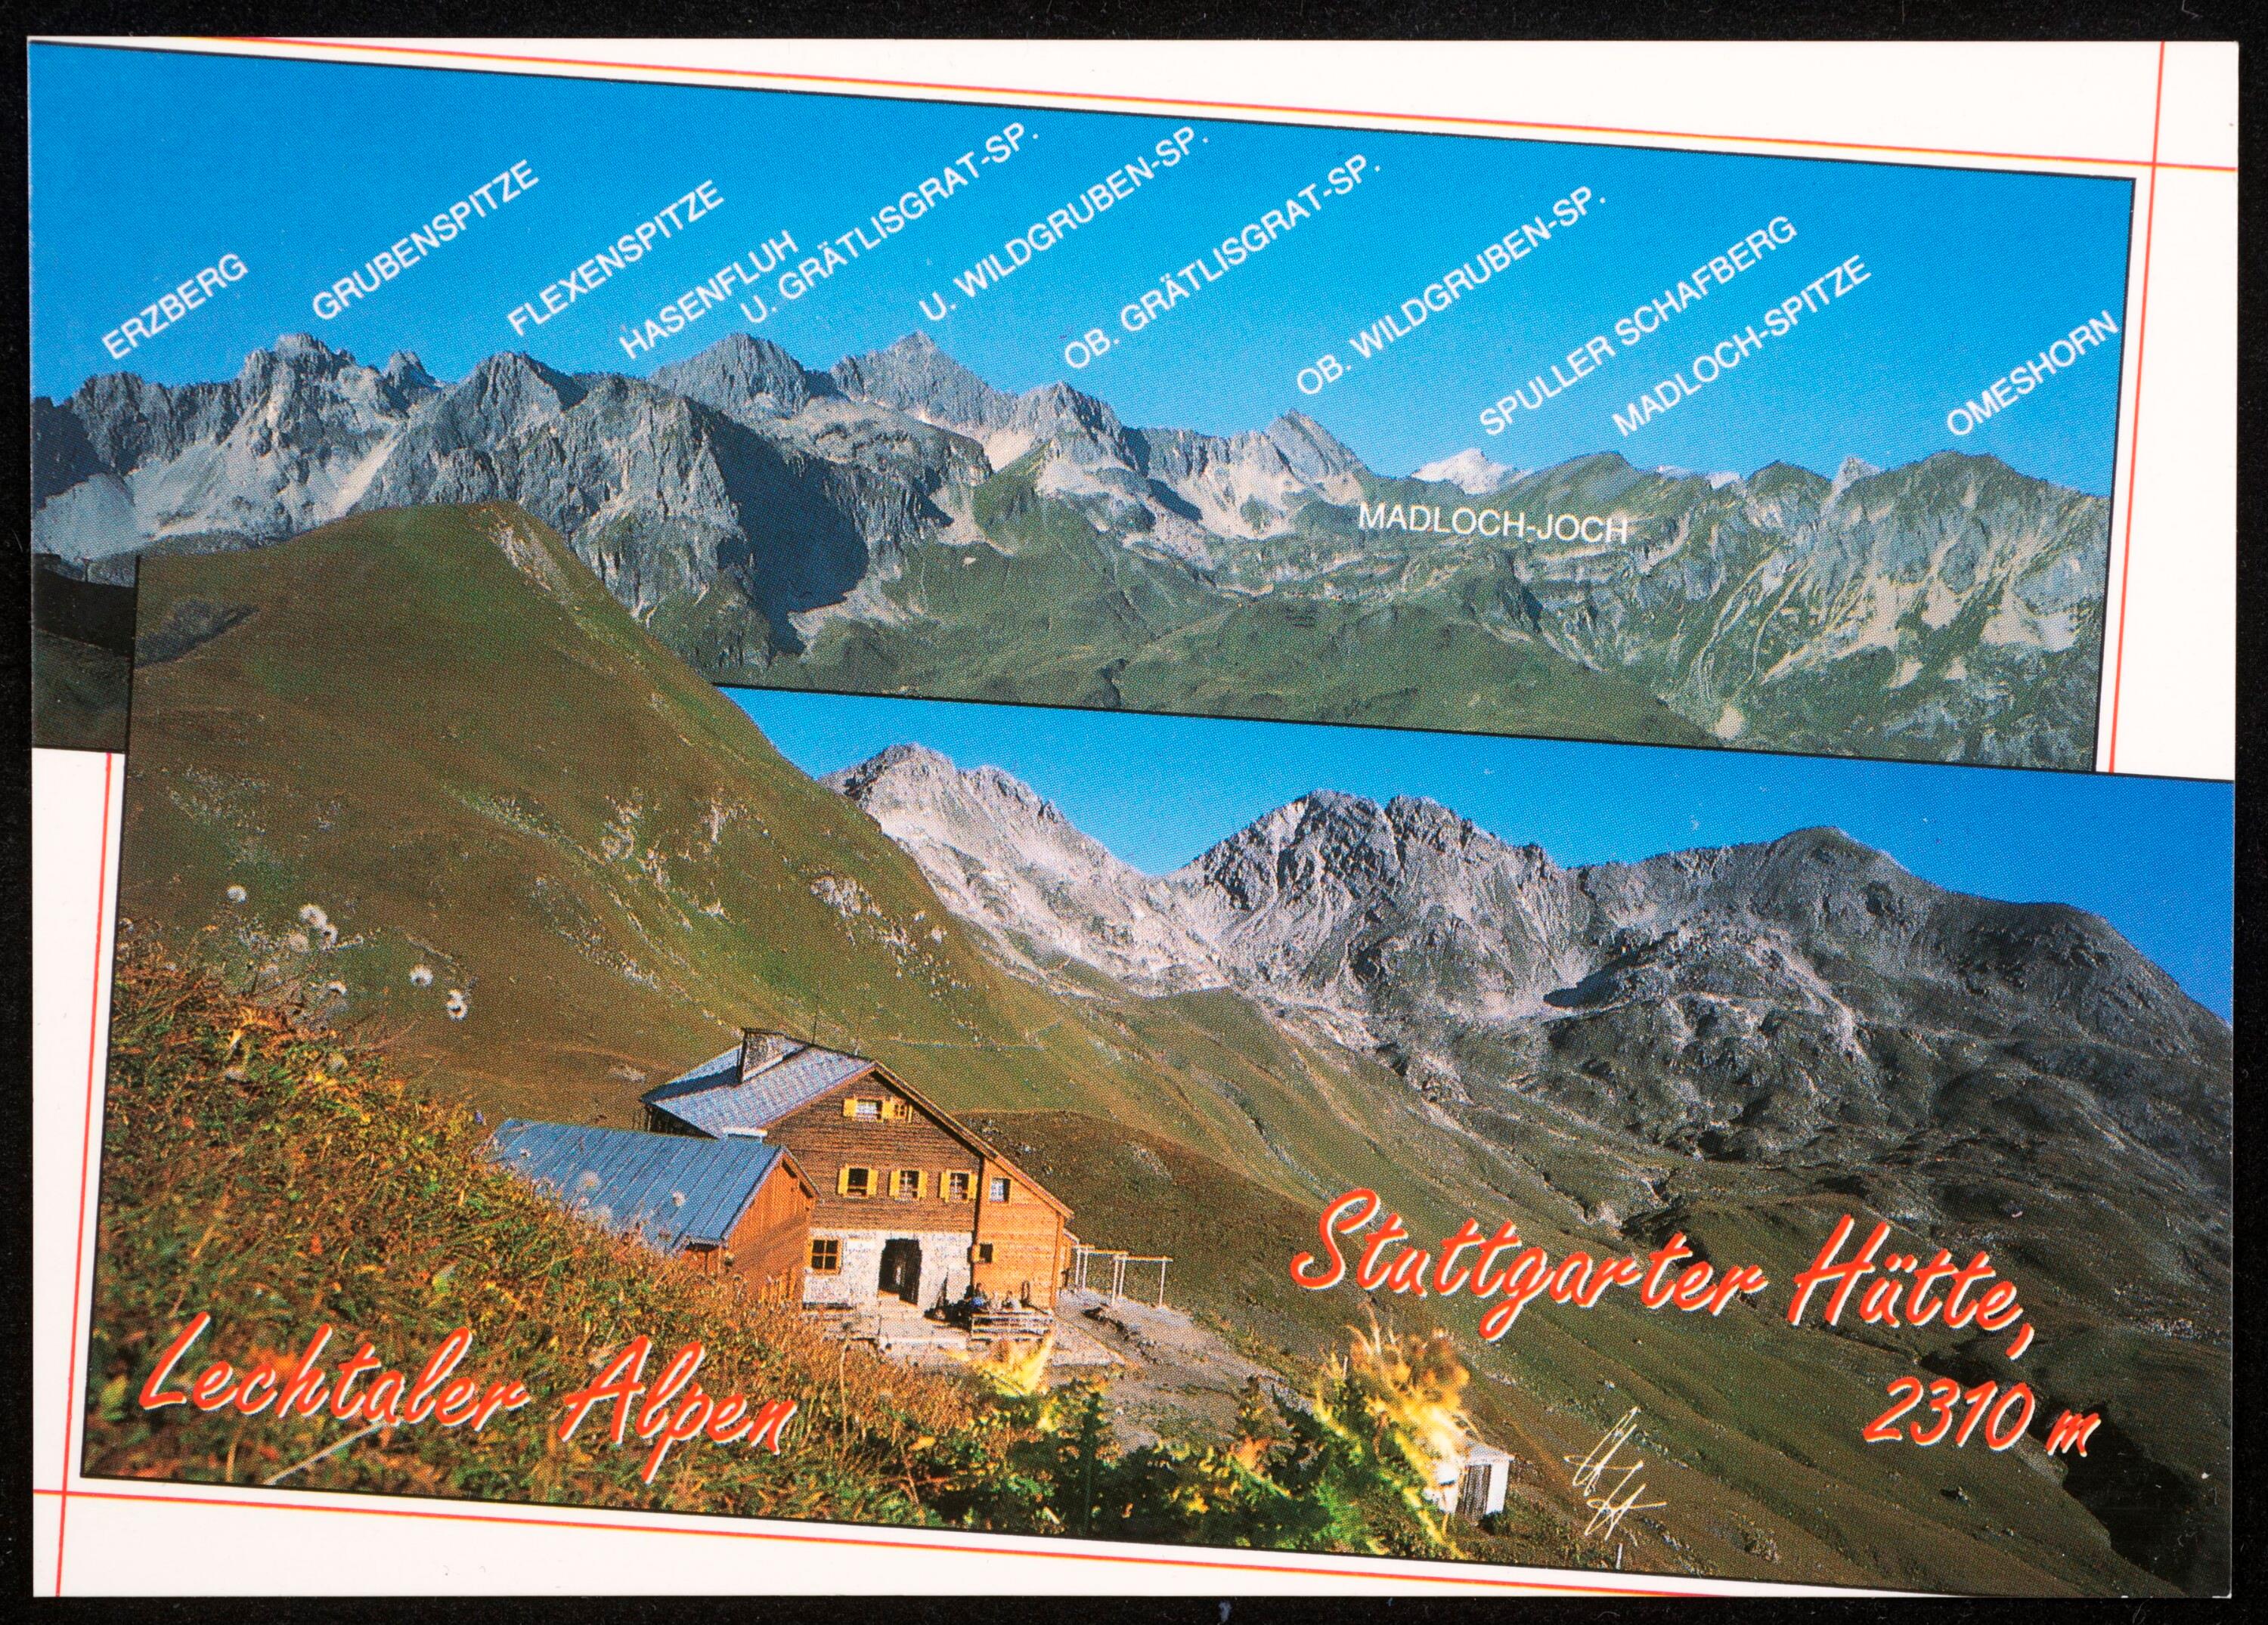 [Lech Zürs] Stuttgarter Hütte, 2310 m Lechtaler Alpen ...></div>


    <hr>
    <div class=